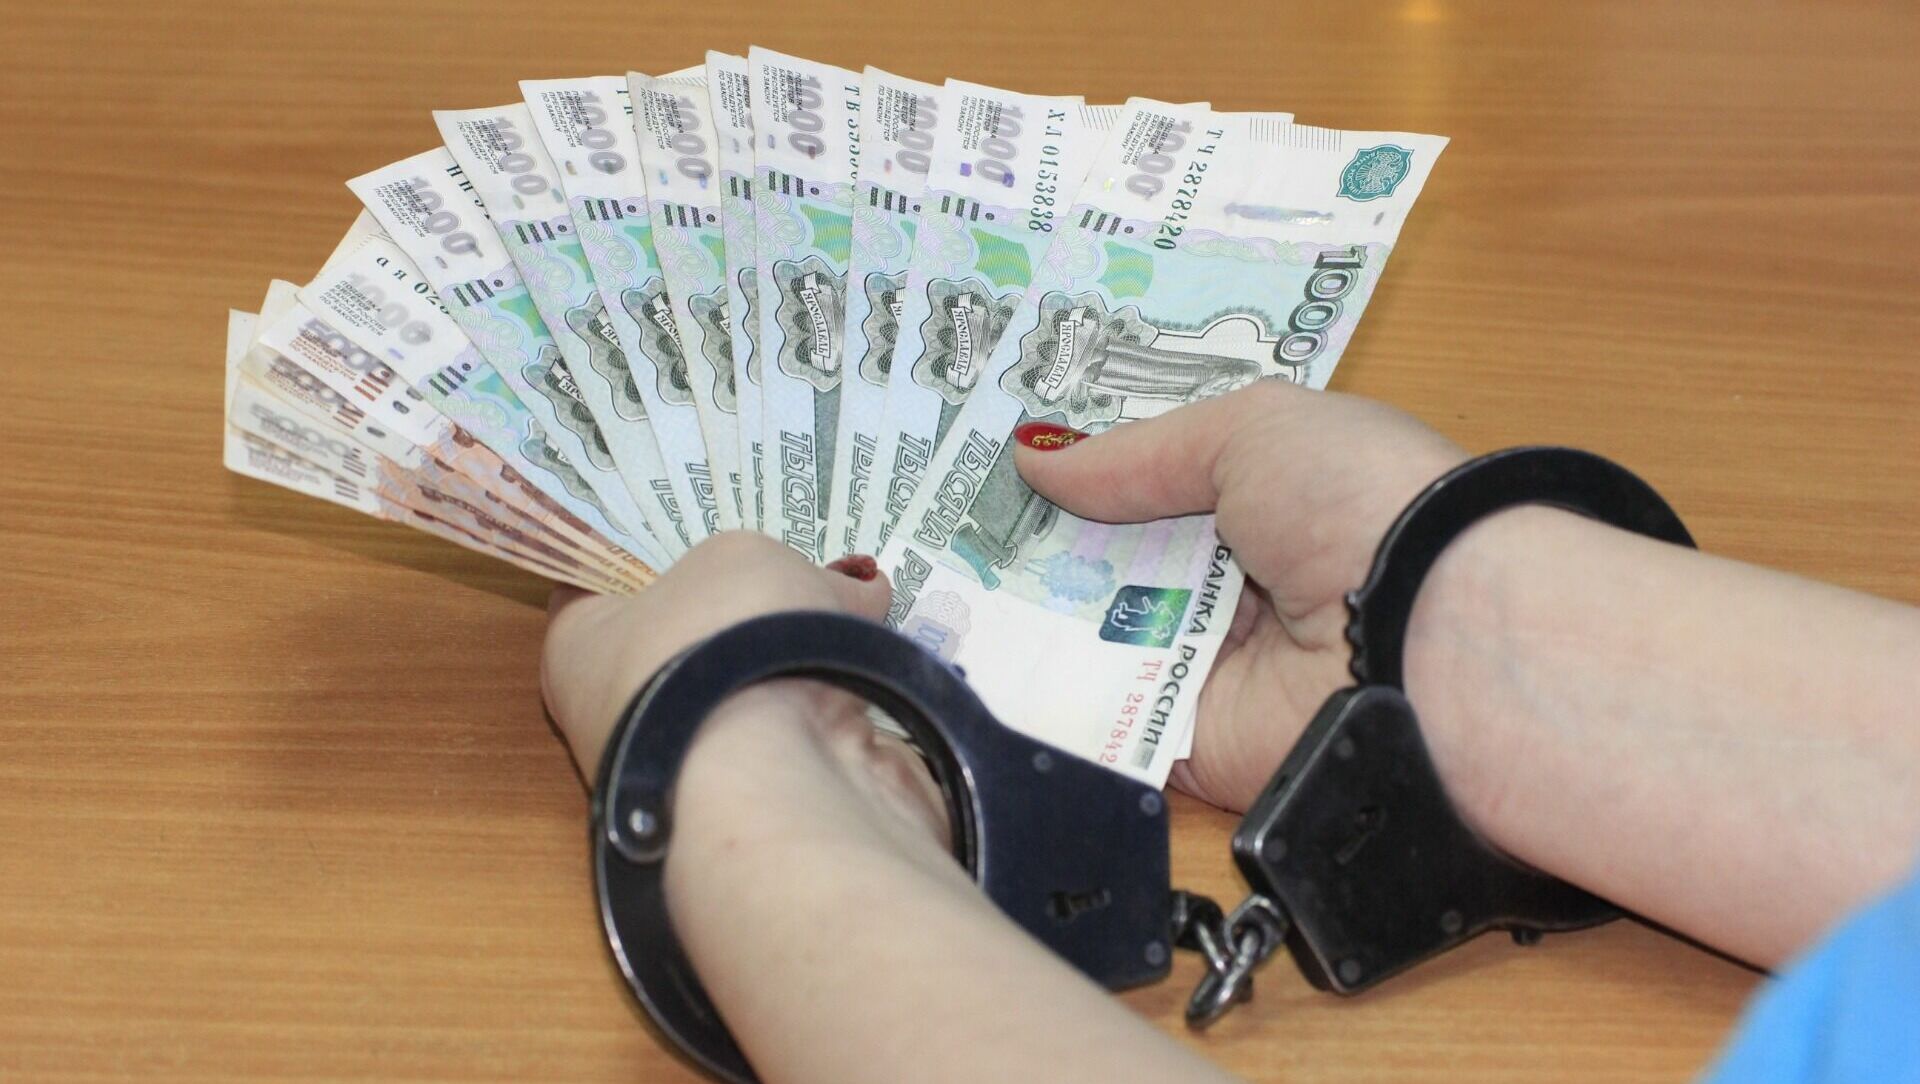 В Сальском районе поймали участкового на взятке 80 тыс рублей от освобожденной по УДО